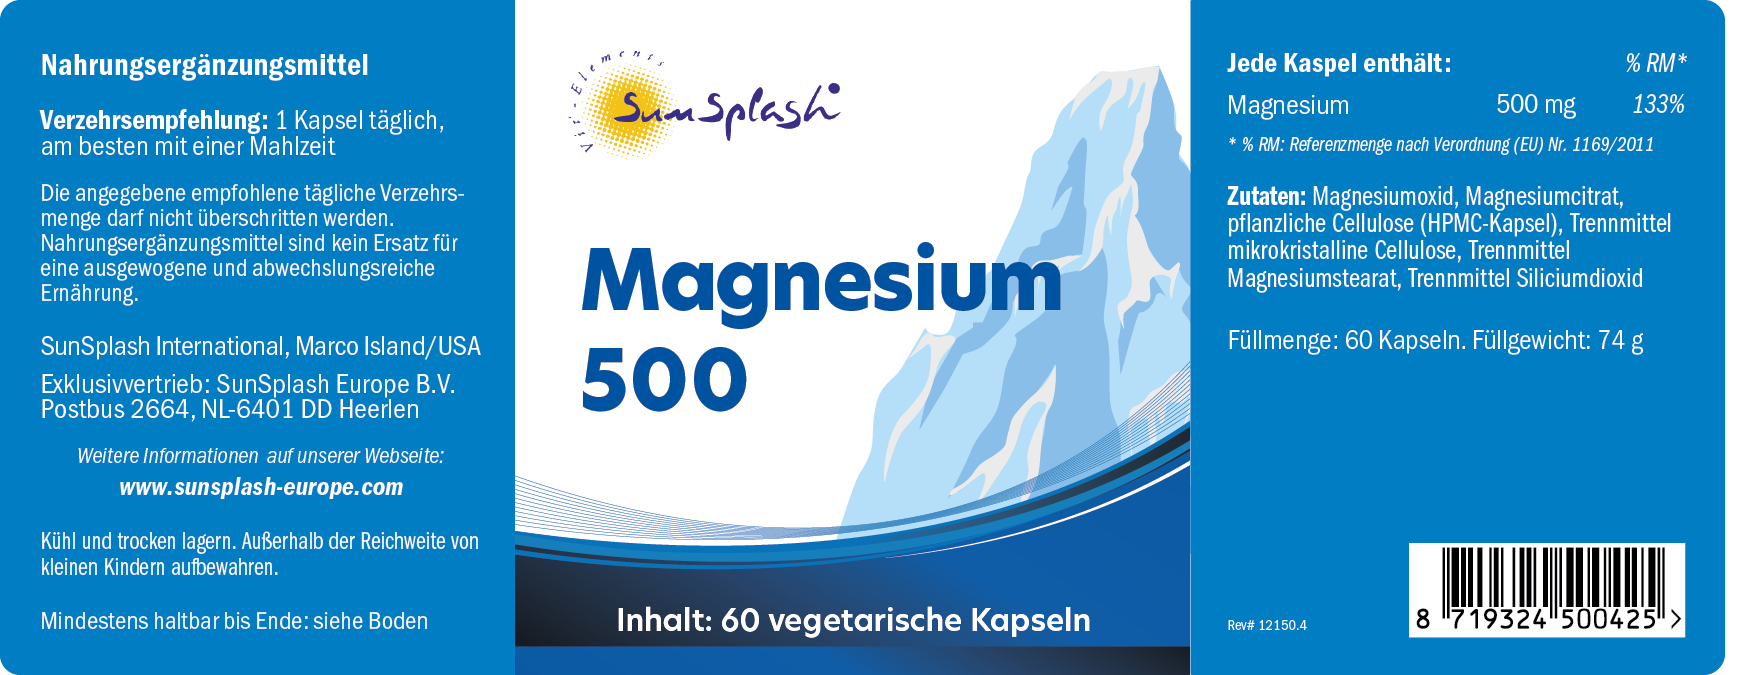 Magnesio 500 (60 caps.)